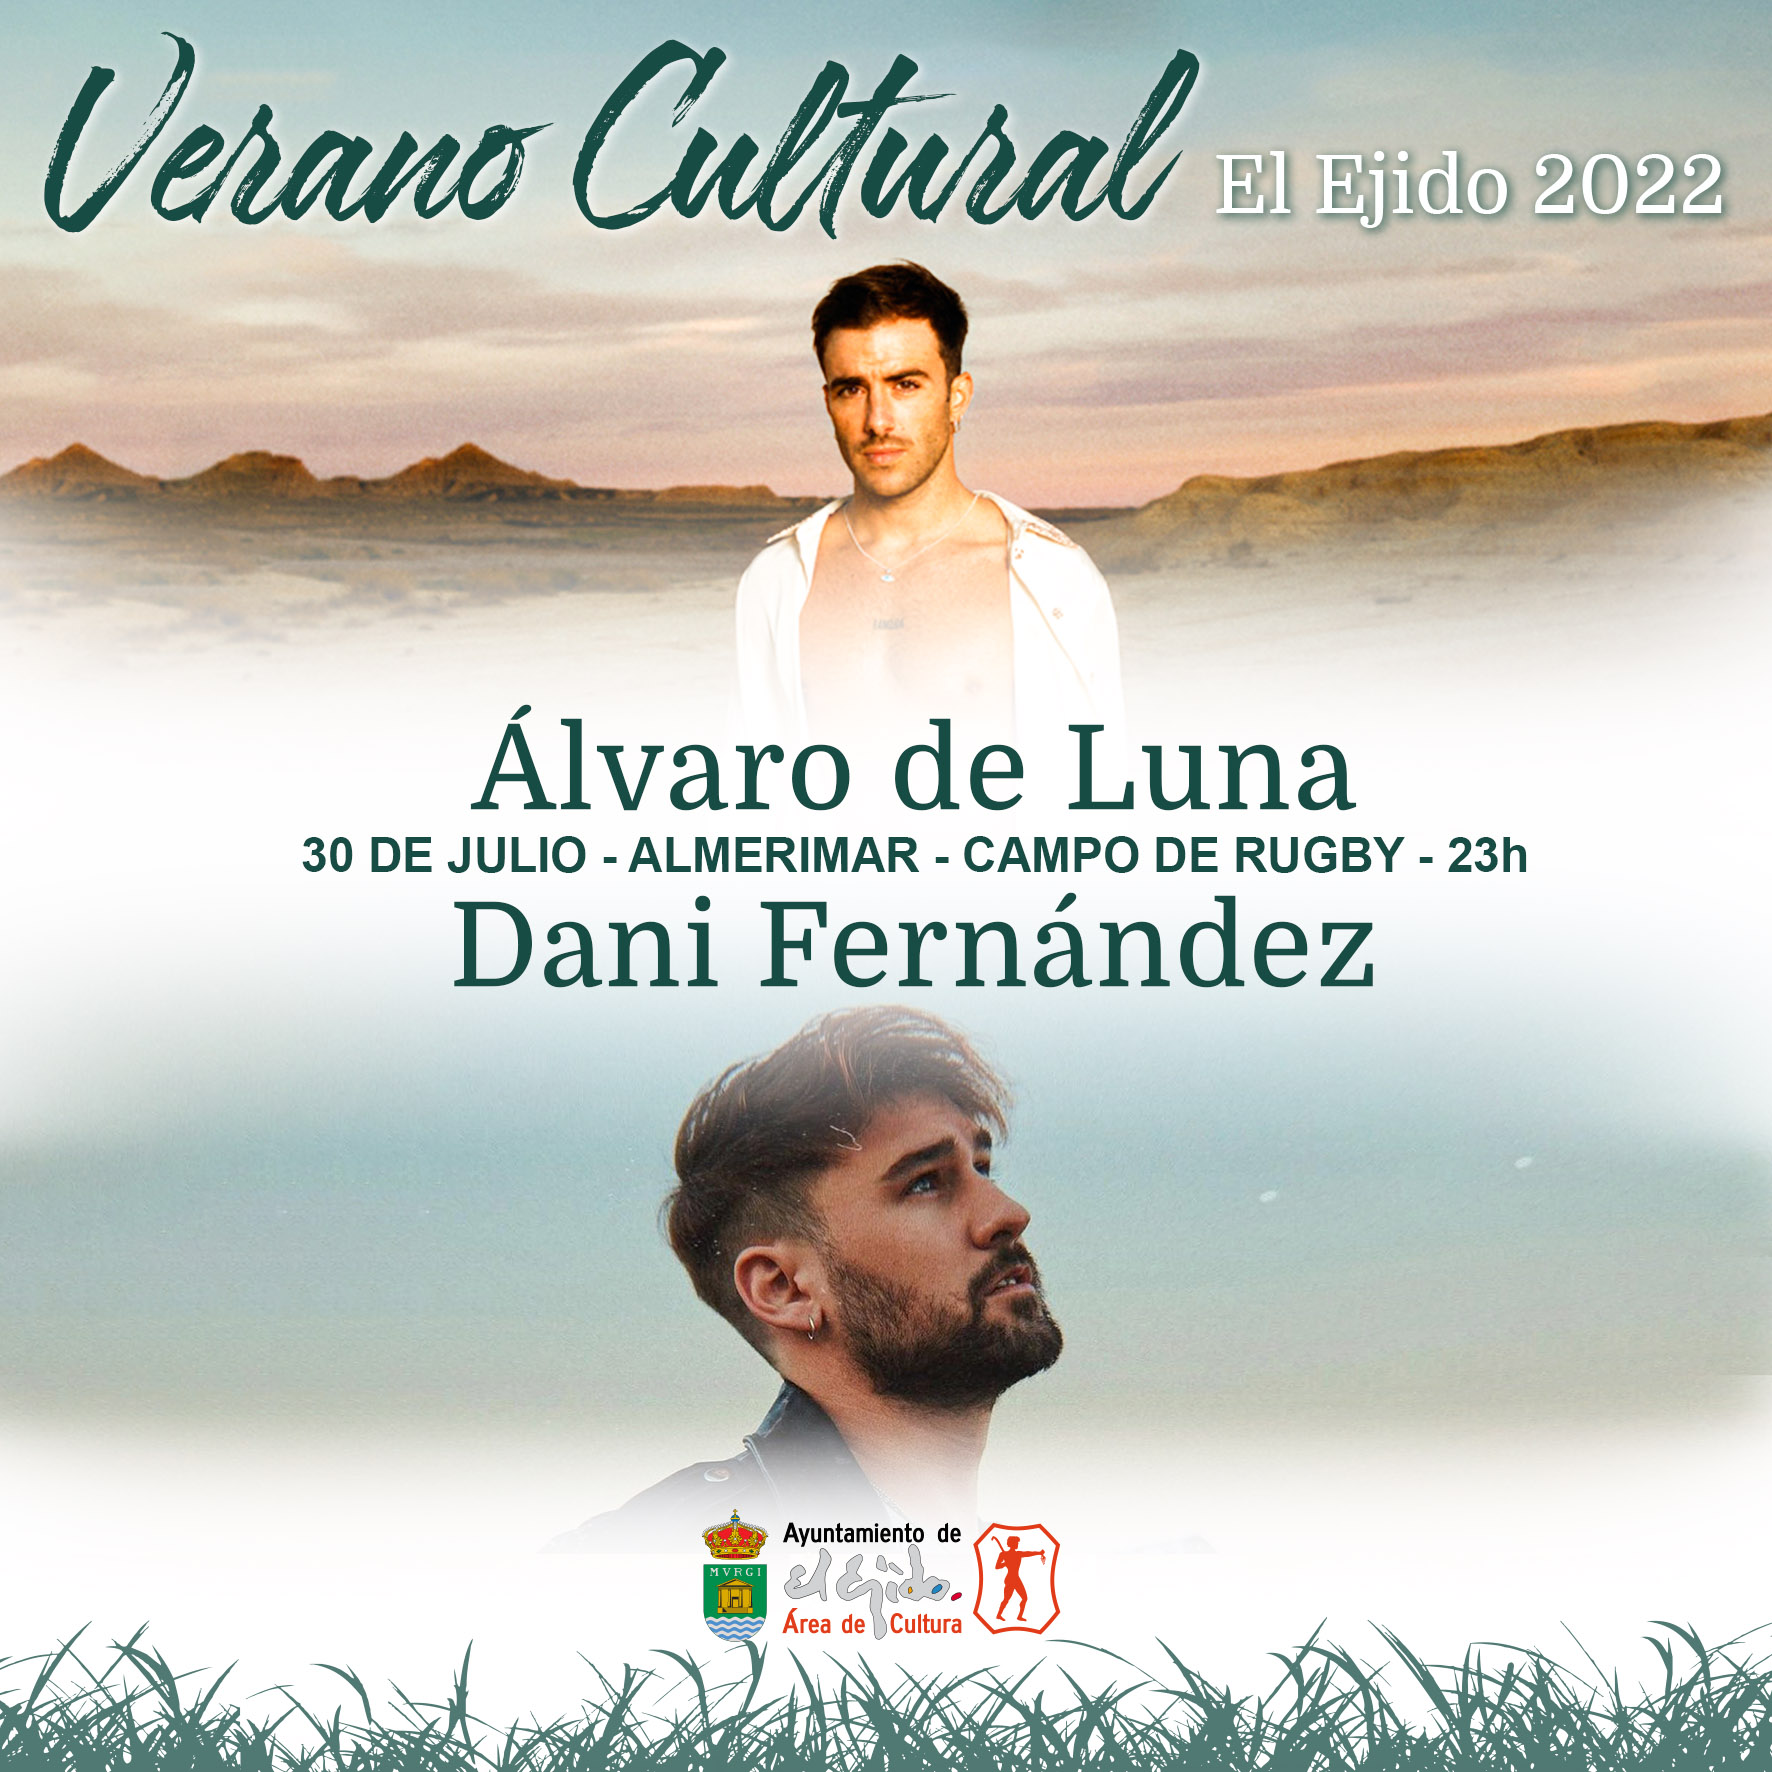 Verano Cultural 2022 de El Ejido – Álvaro de Luna y Dani Fernández en concierto